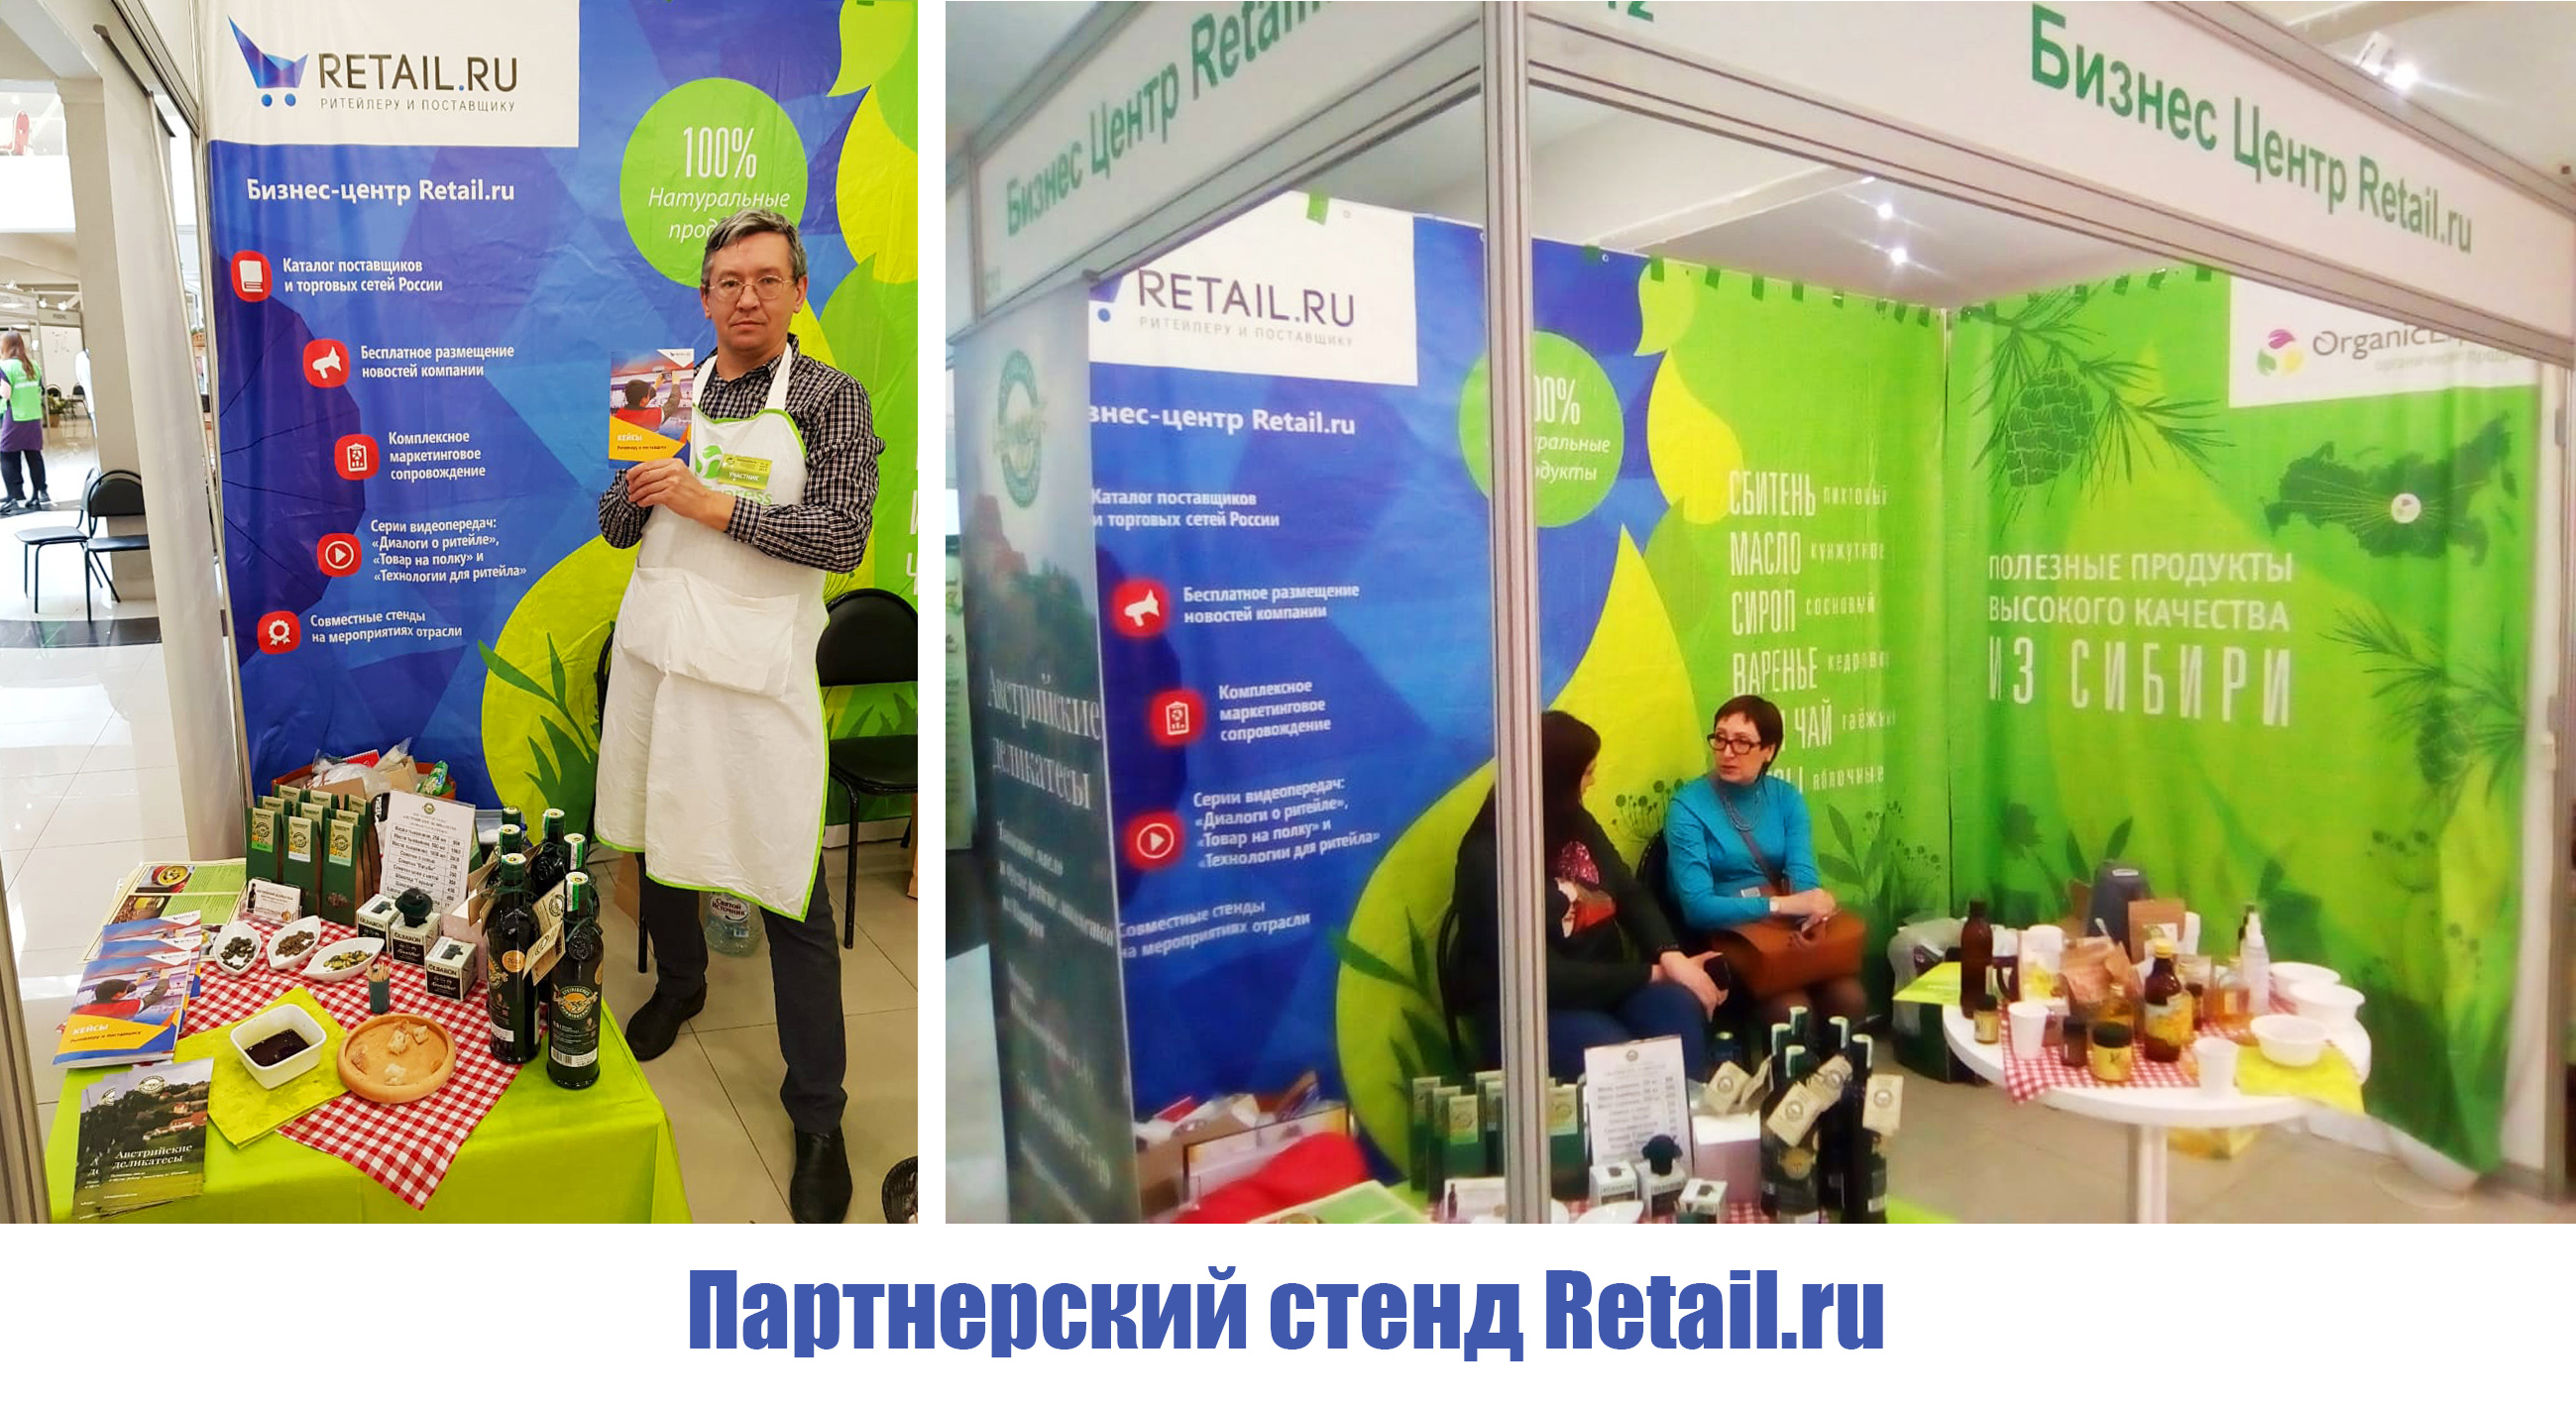 Партнерский стенд Retail.ru